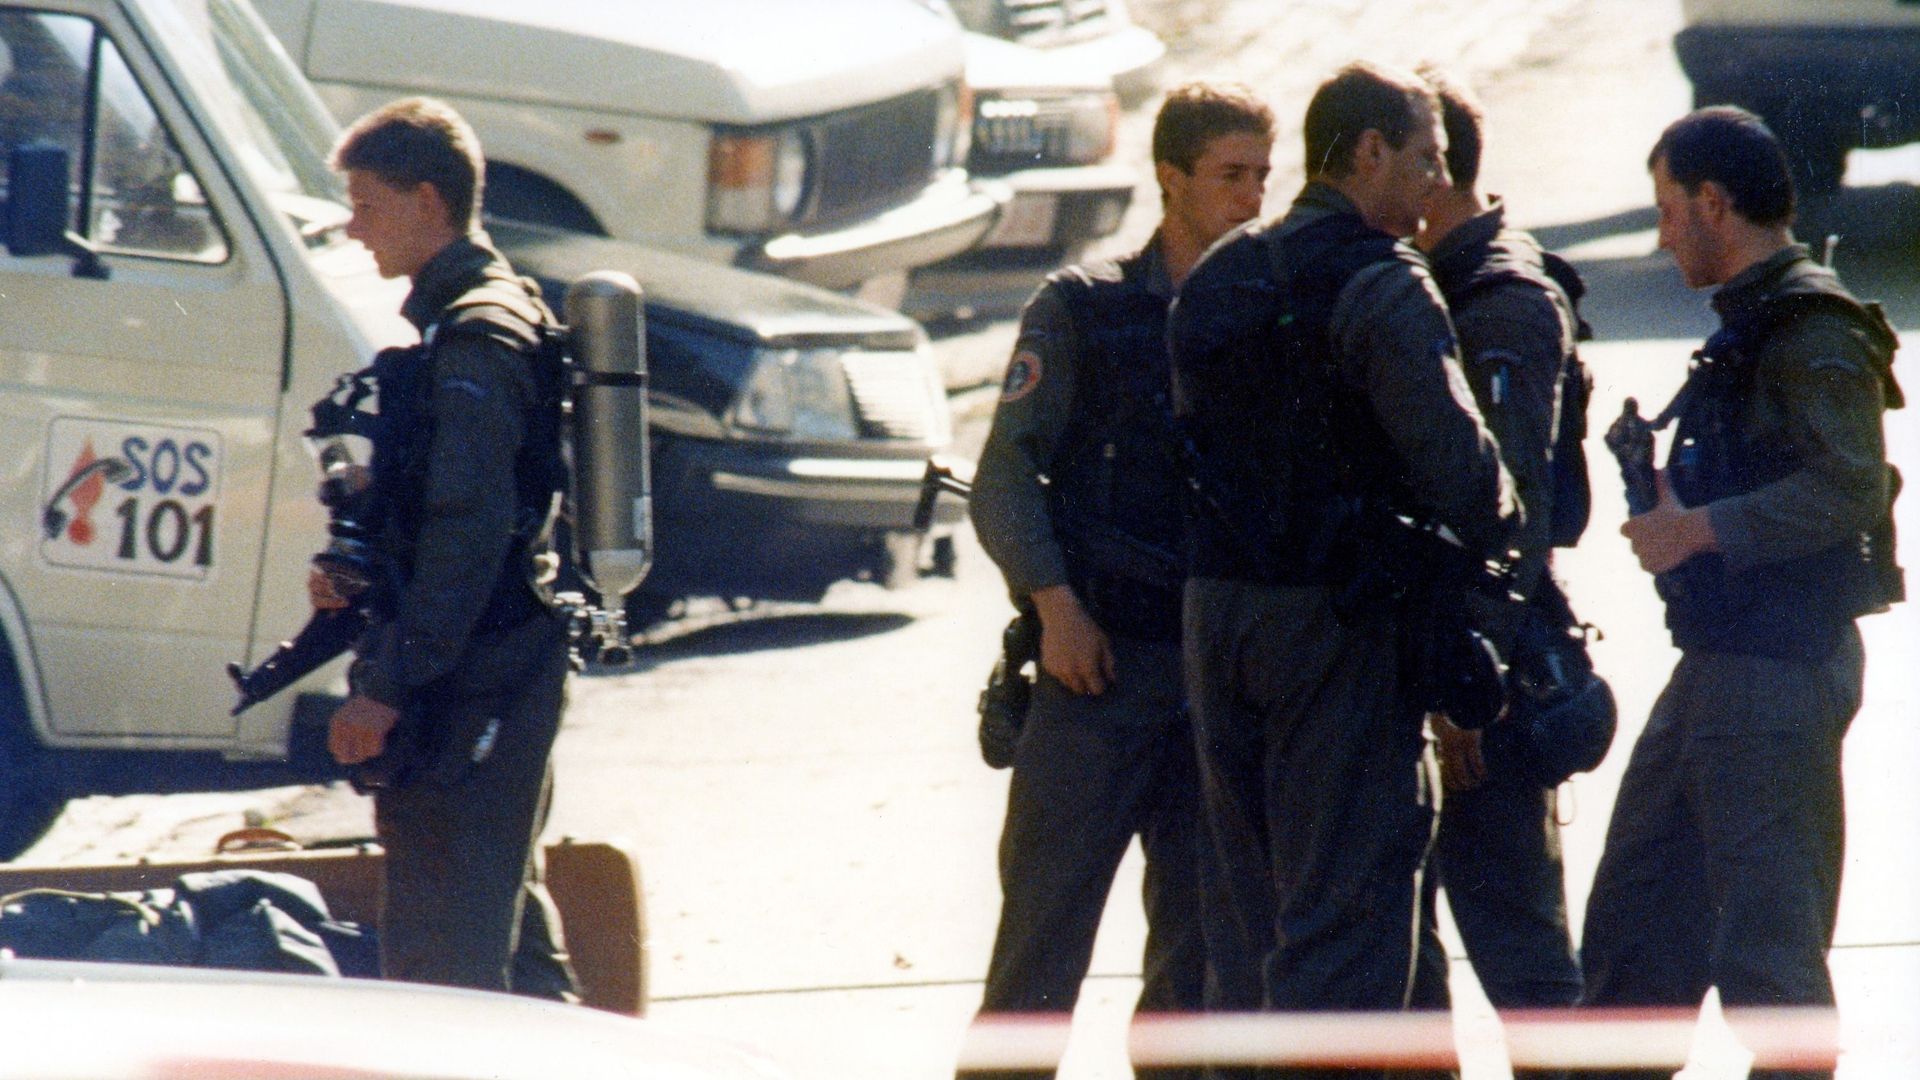 Un groupe d'intervention spécial de la police près de la maison des Jeuris le 20 septembre 1989.